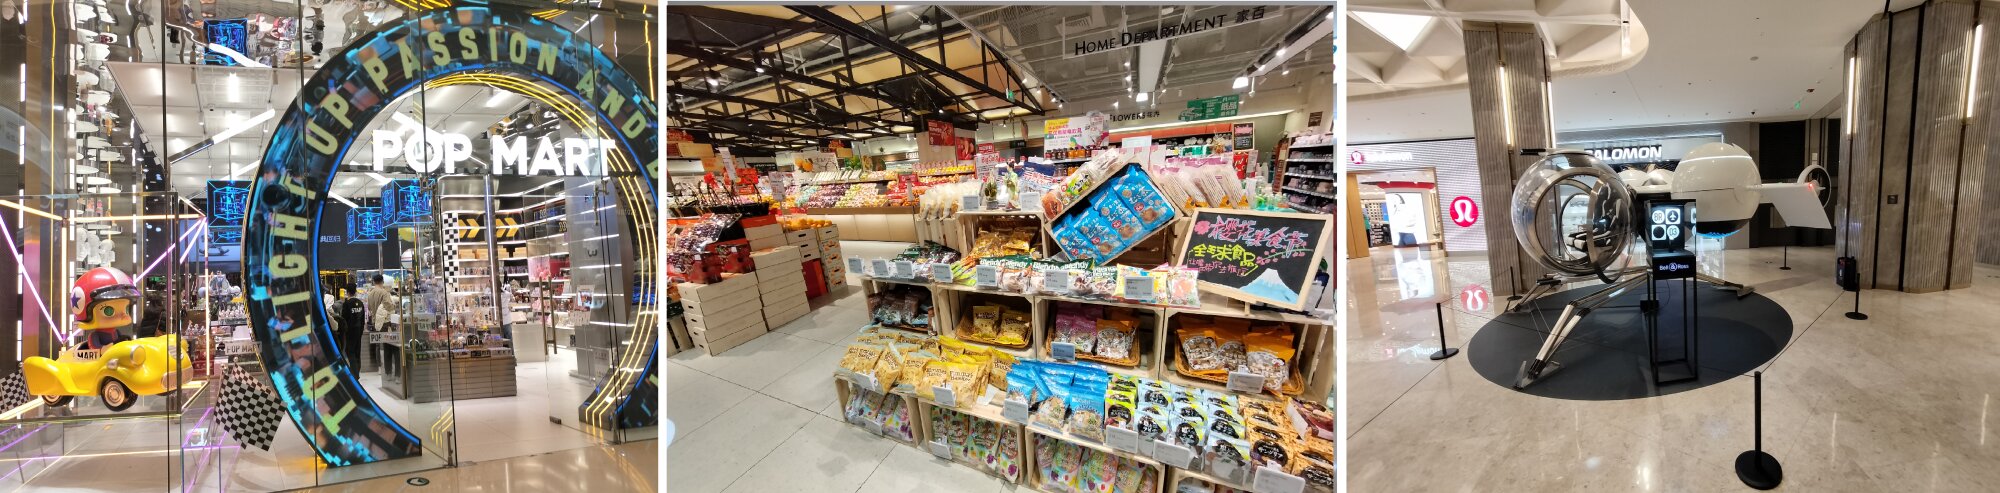 ポップアートのショップは若い人たちに人気。日本のスーパーマーケットを研究して、日本式のディスプレイを導入している店舗も。ショッピングモールの片隅に置かれていた「空飛ぶ自動車」（撮影・筆者）